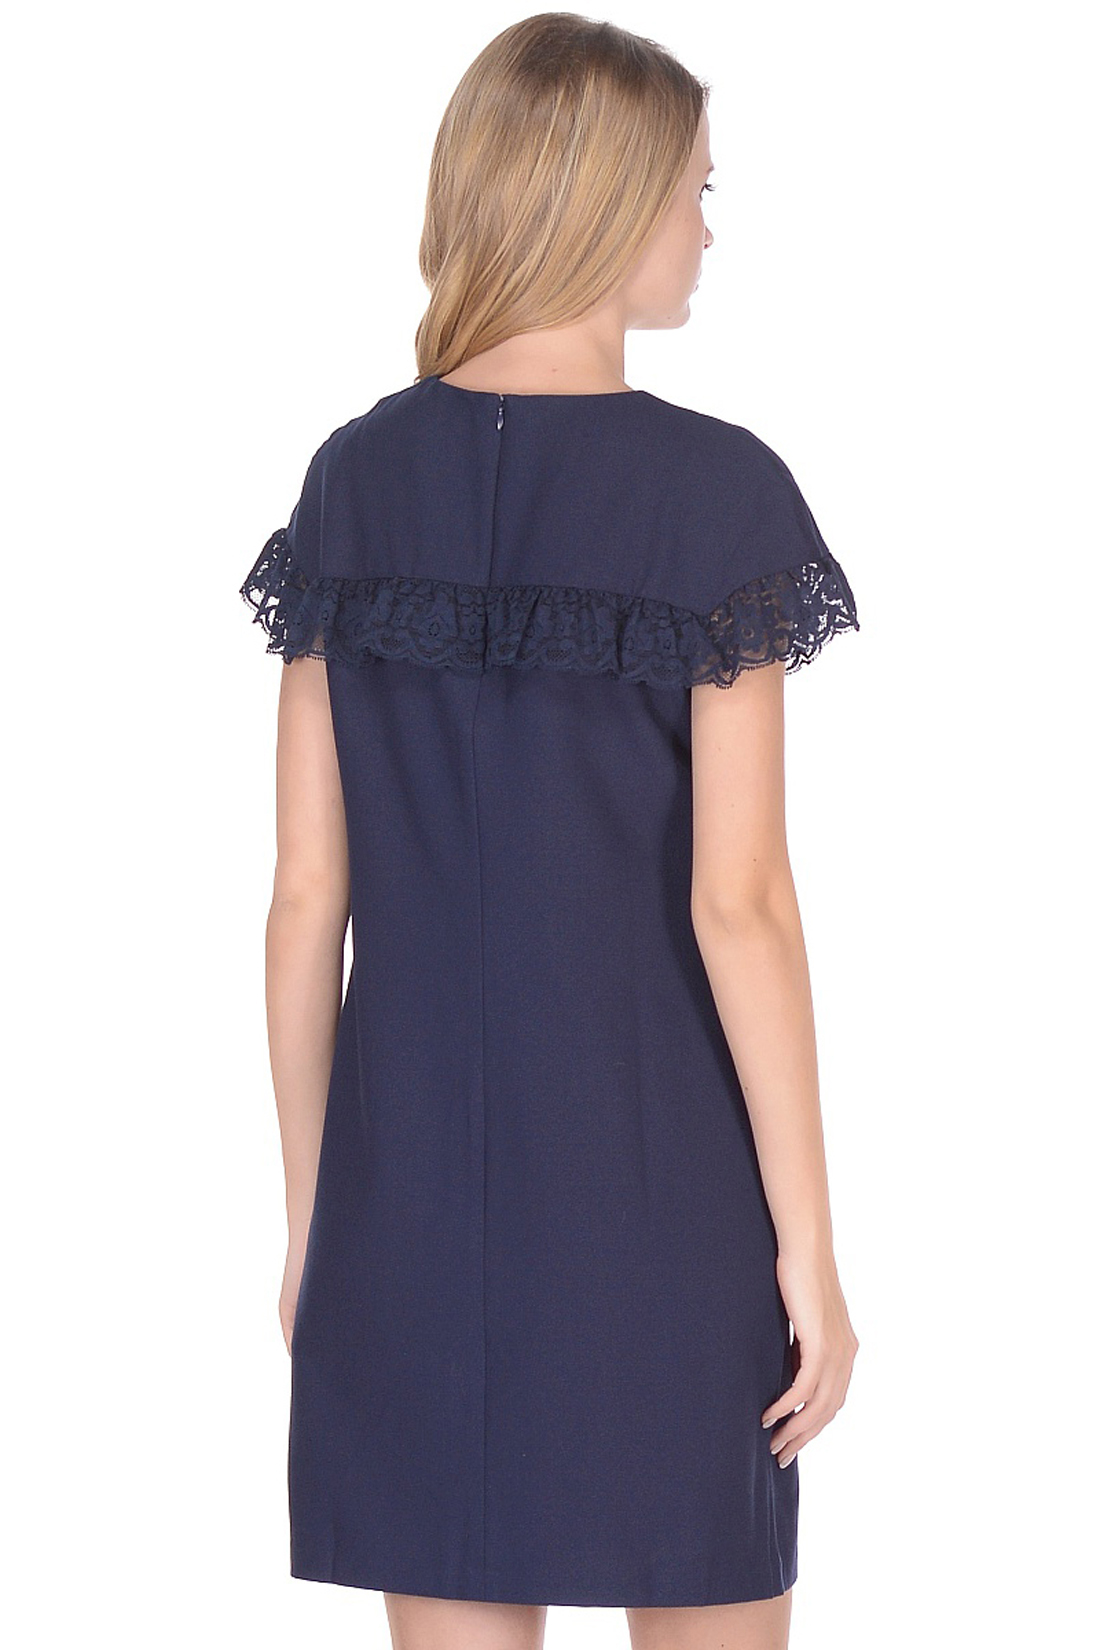 Платье с кружевом на кокетке (арт. baon B458004), размер XS, цвет синий Платье с кружевом на кокетке (арт. baon B458004) - фото 2